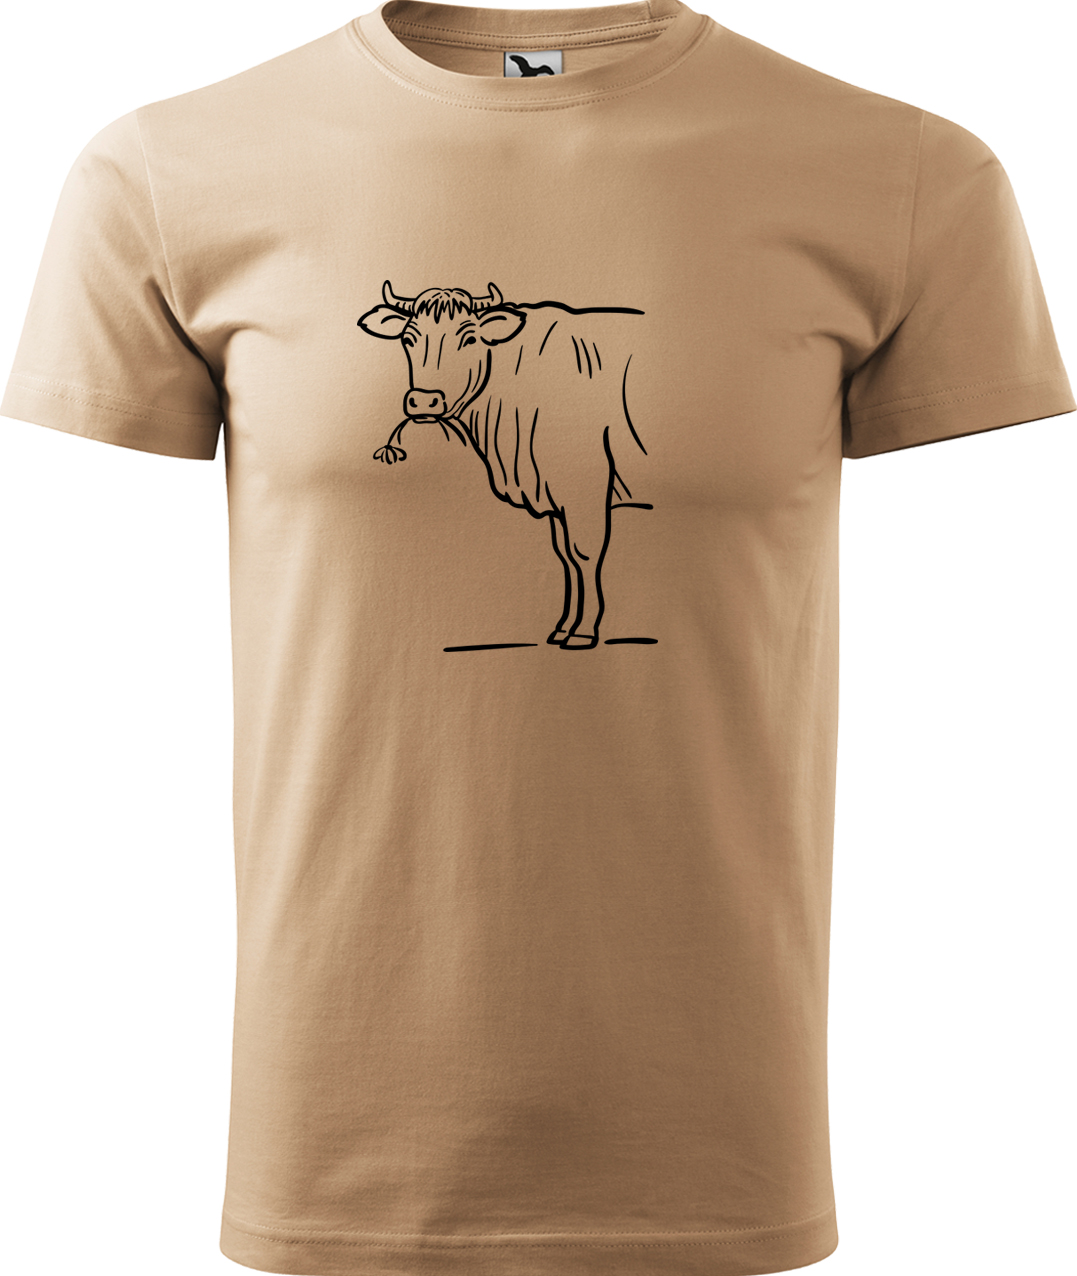 Pánské tričko s krávou - Býk Velikost: XL, Barva: Písková (08), Střih: pánský